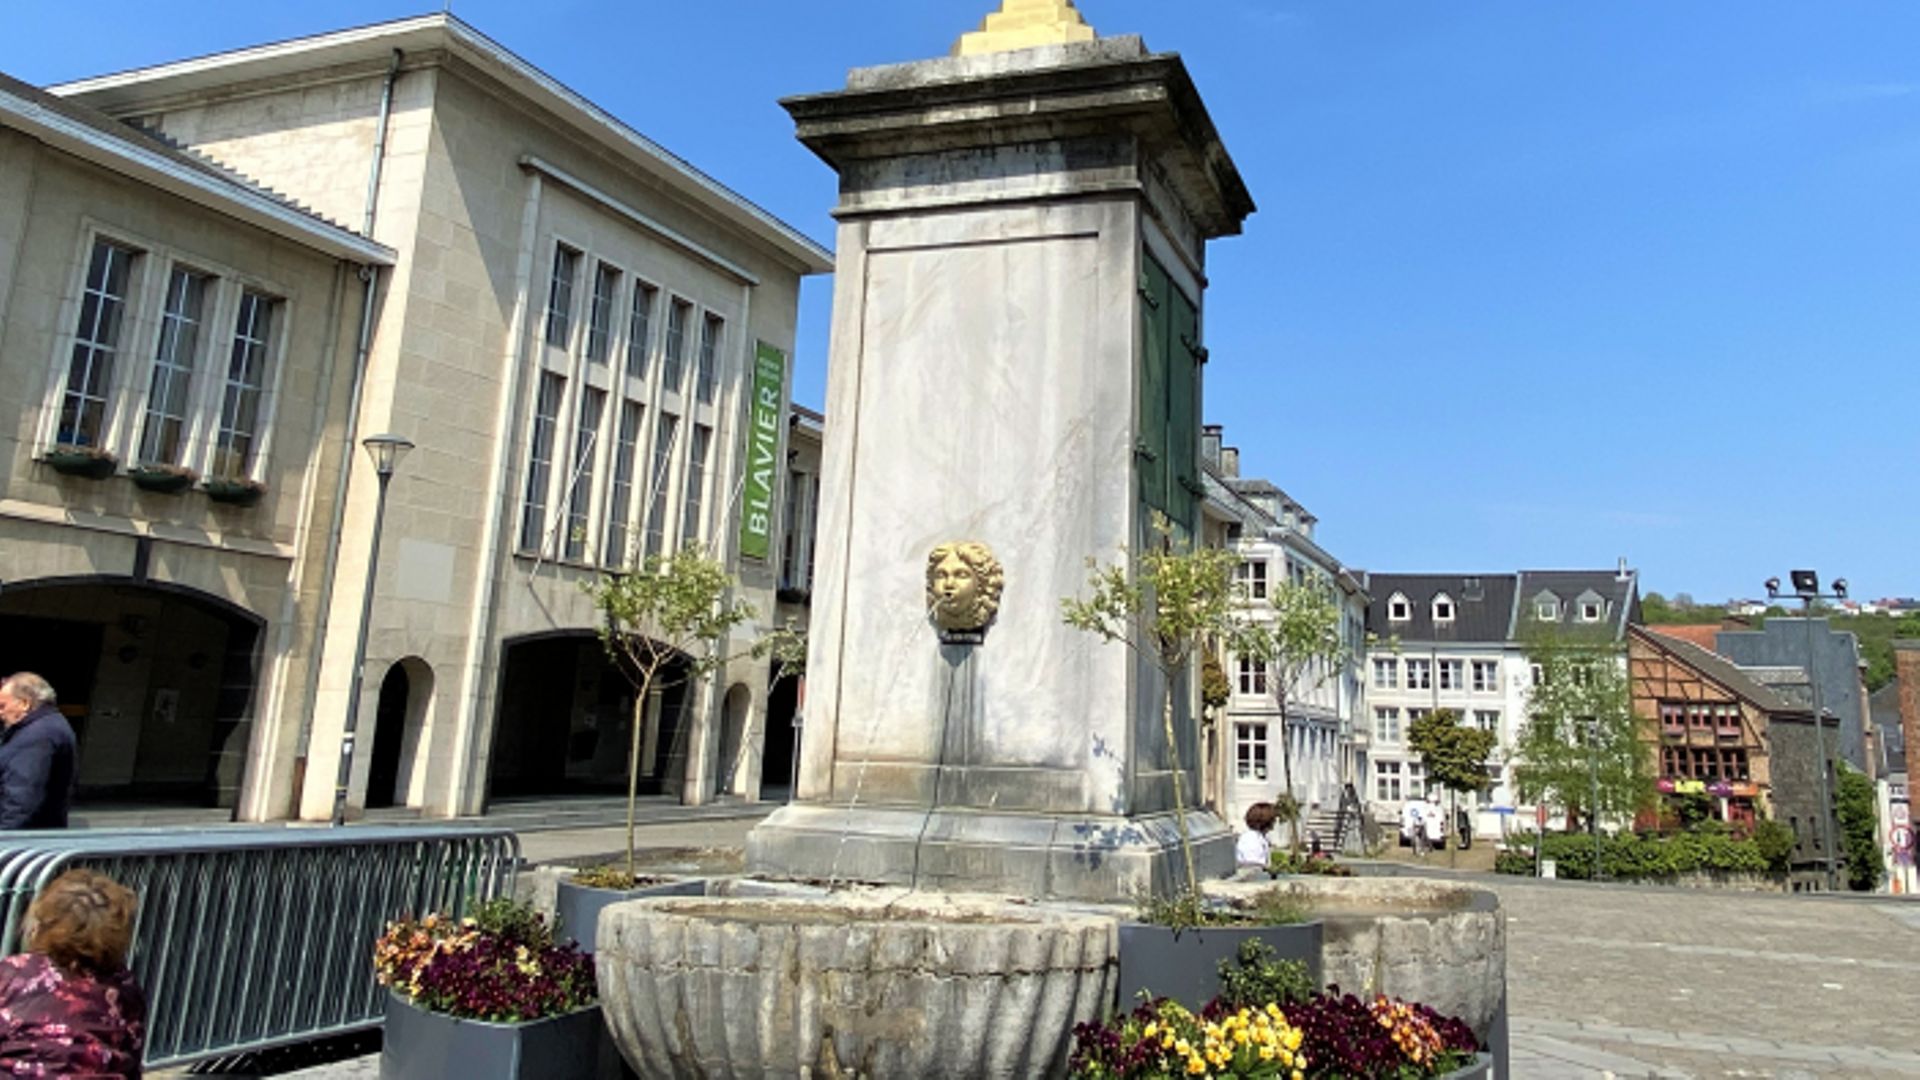 Le Perron verviétois est situé au pied de l'Hôtel de Ville.